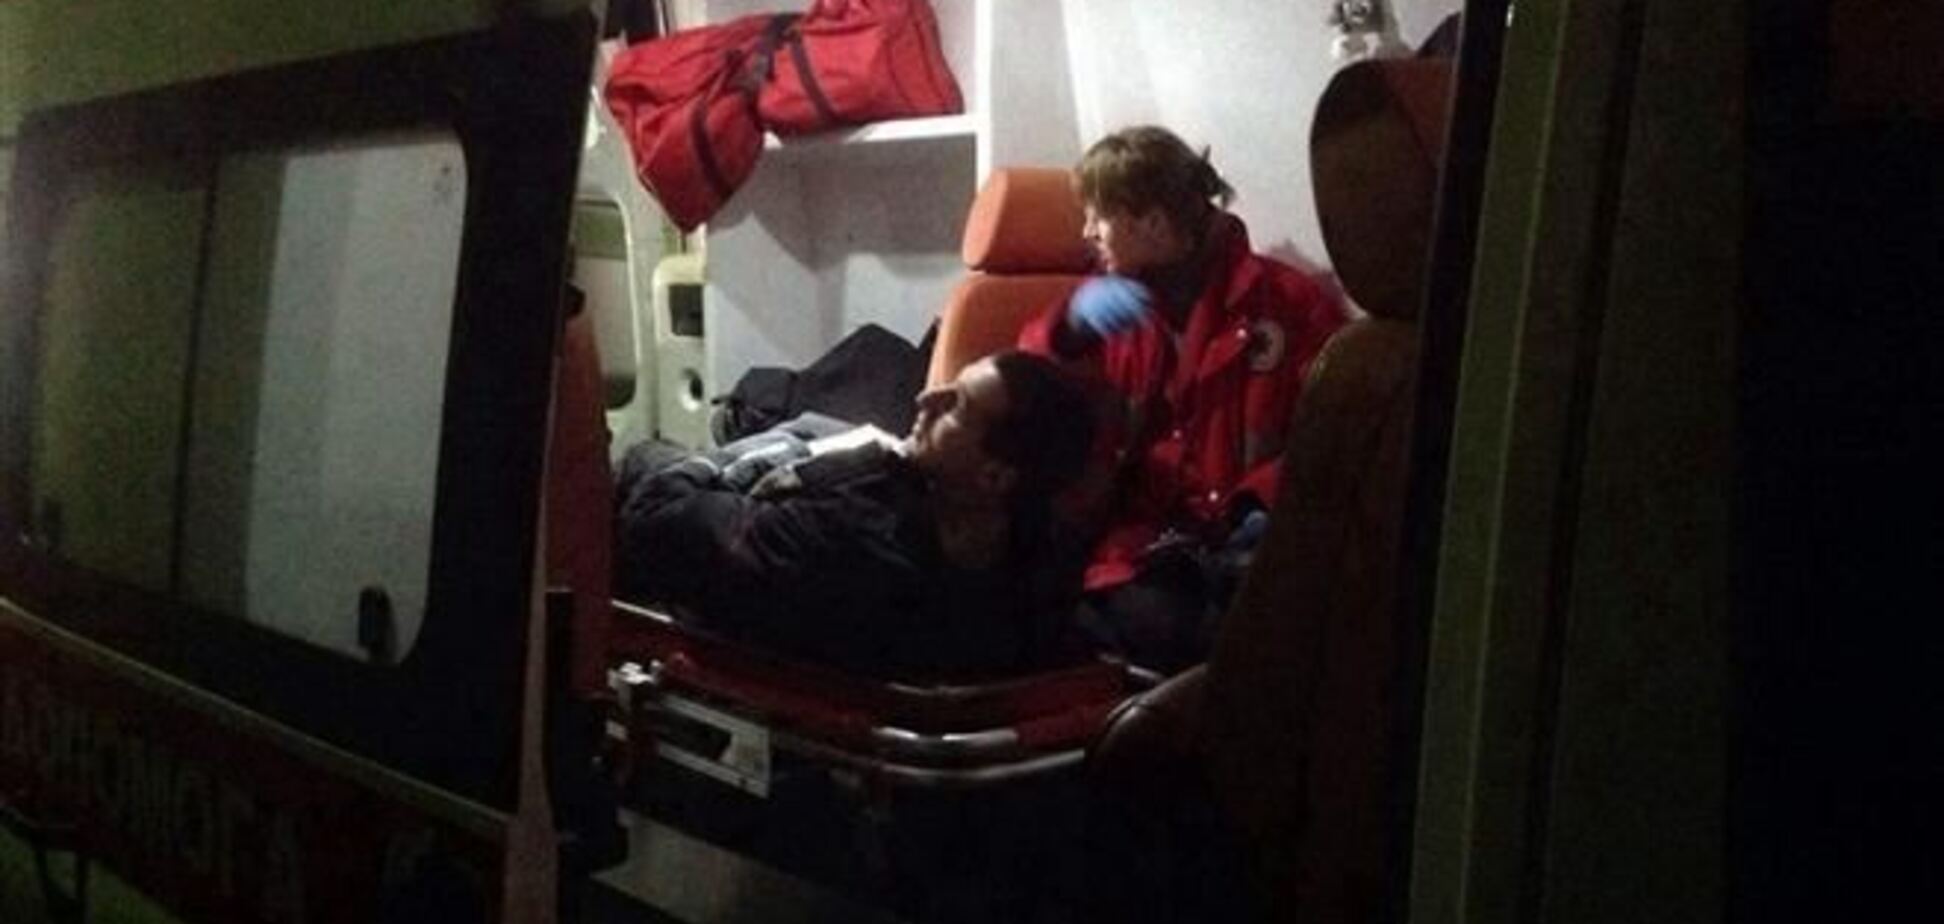 Після вчорашніх подій у Києві до лікарів звернулися 17 осіб - КМДА